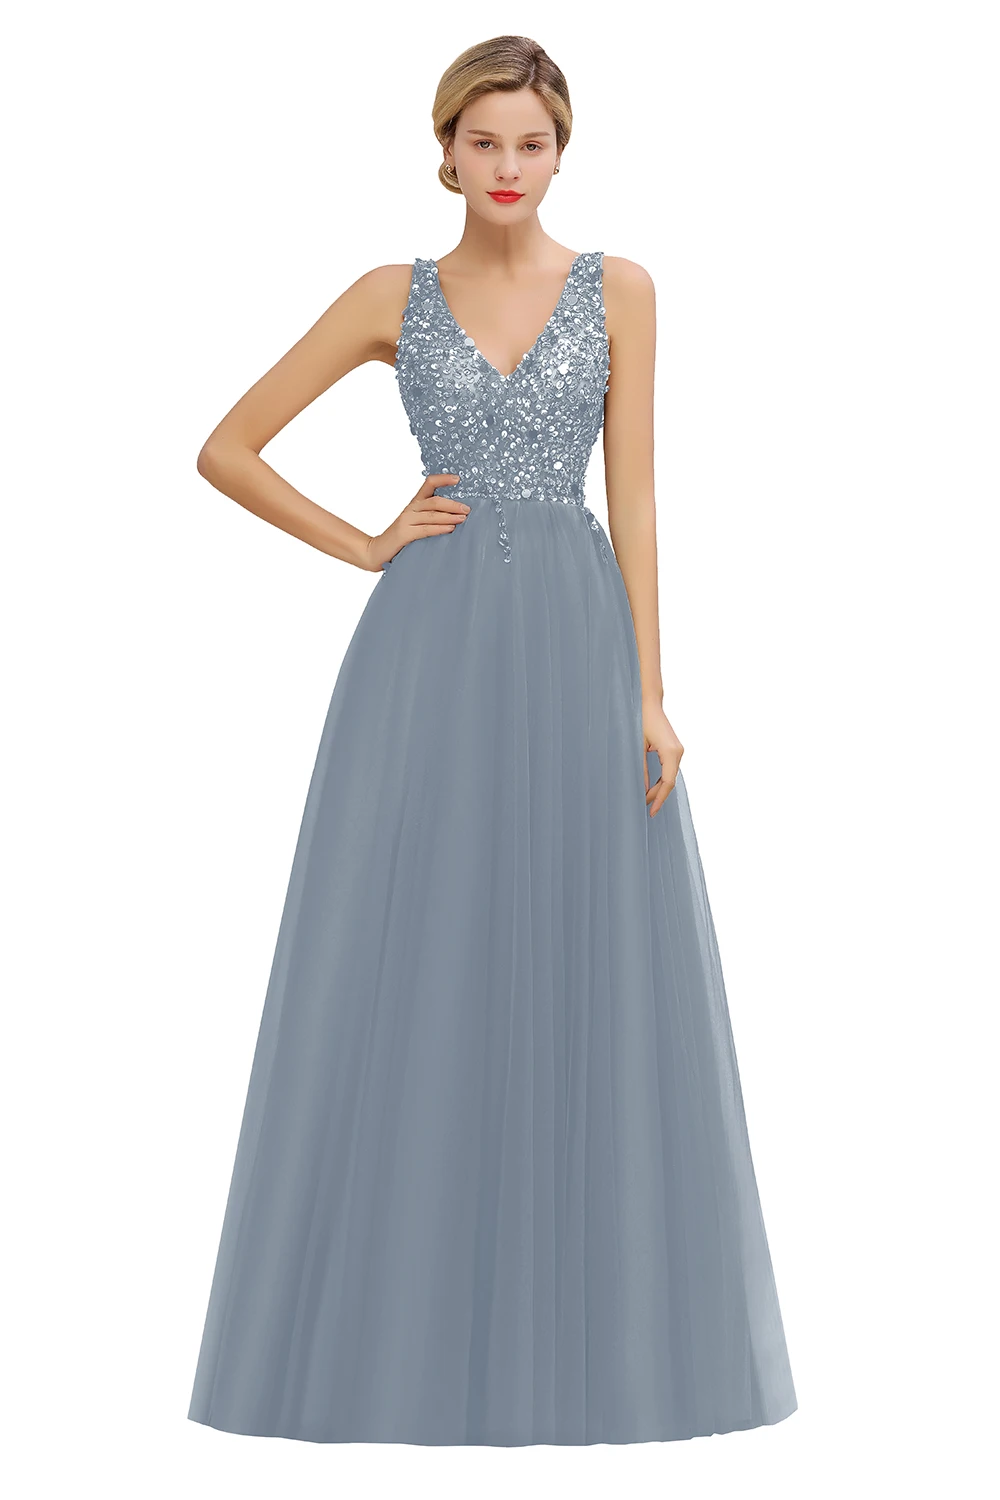 Misshow вечернее платье бордовое длинное фатиновое торжественное вечерние платье роскошное блестящее платье с v-образным вырезом без рукавов robe de soiree - Цвет: Dusty Blue